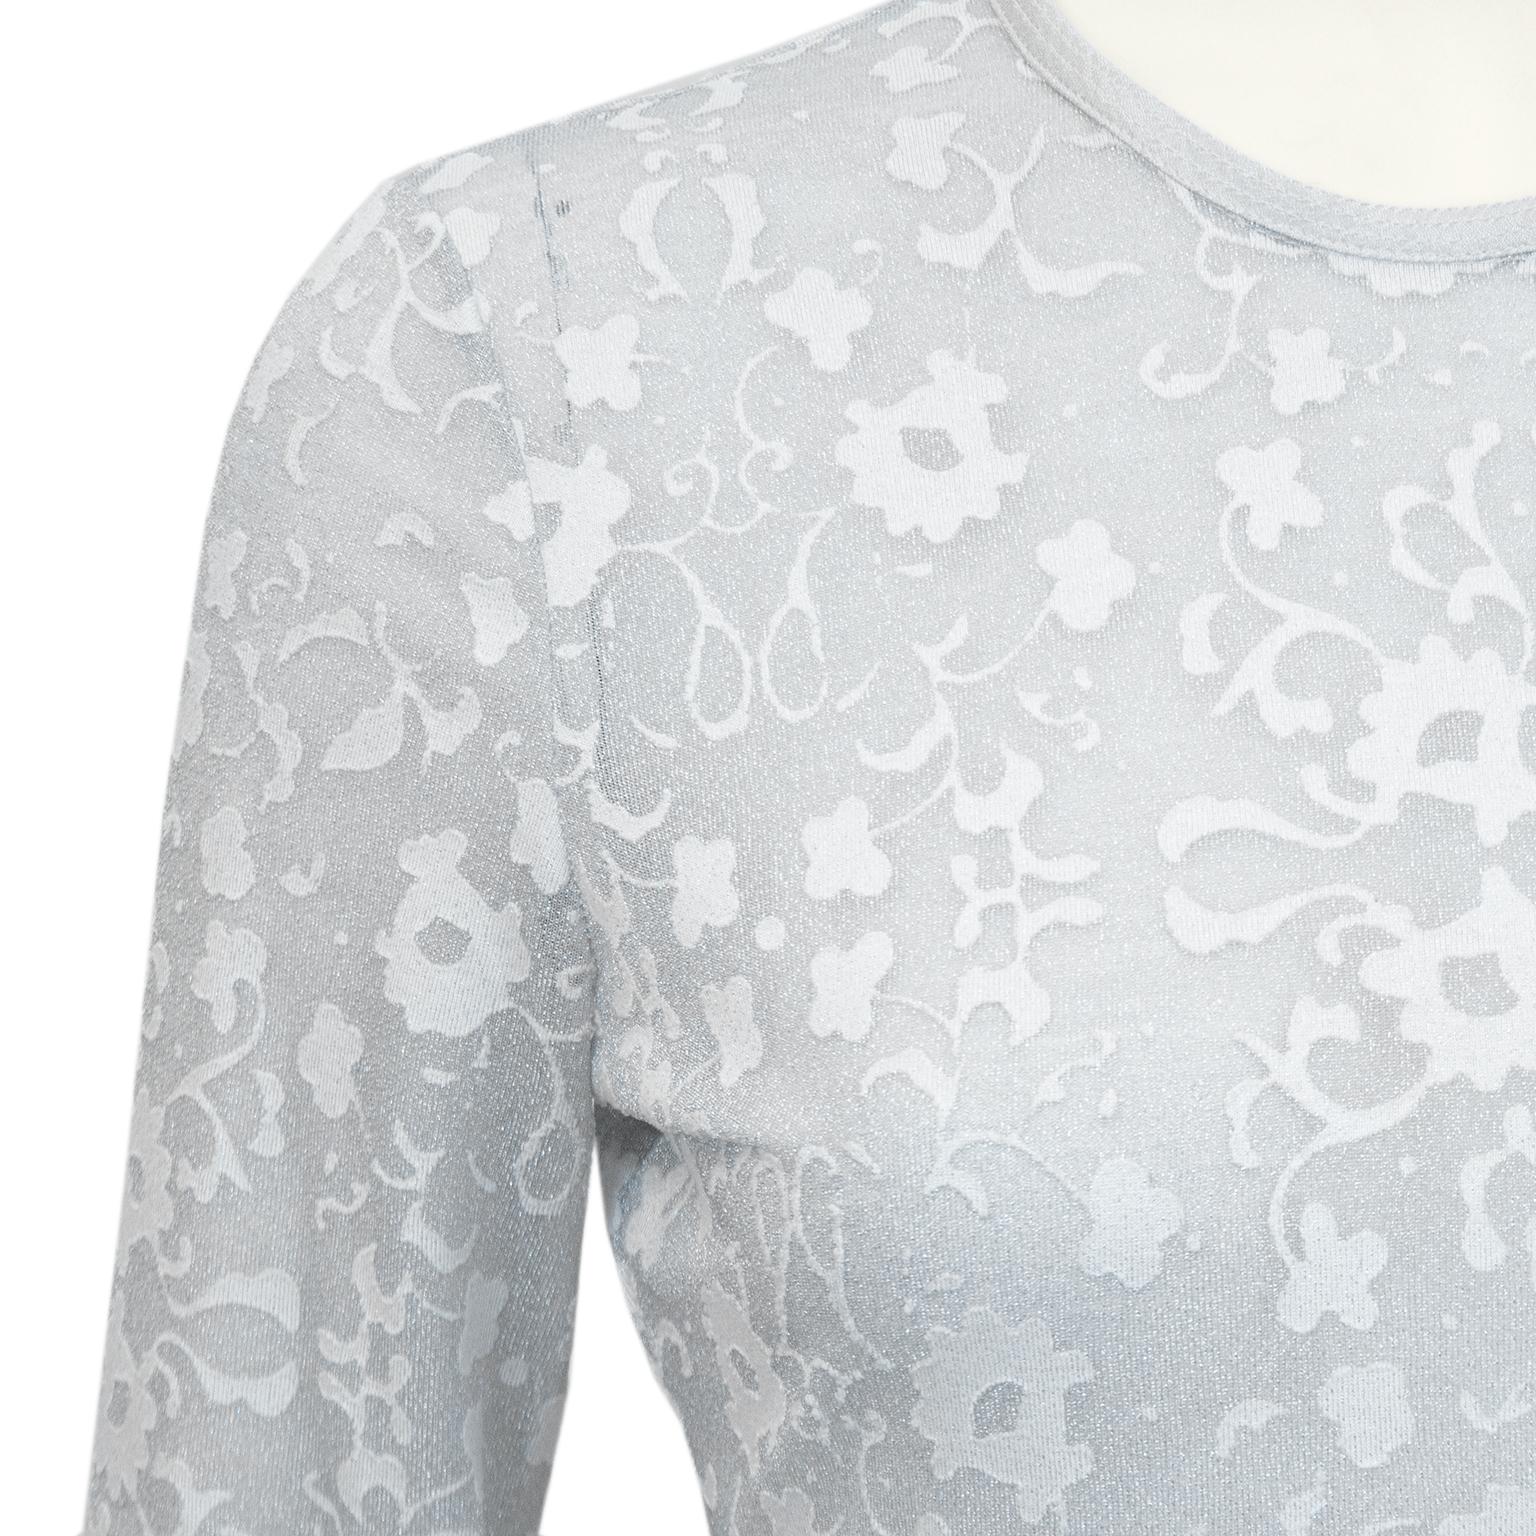 silver lace bodysuit